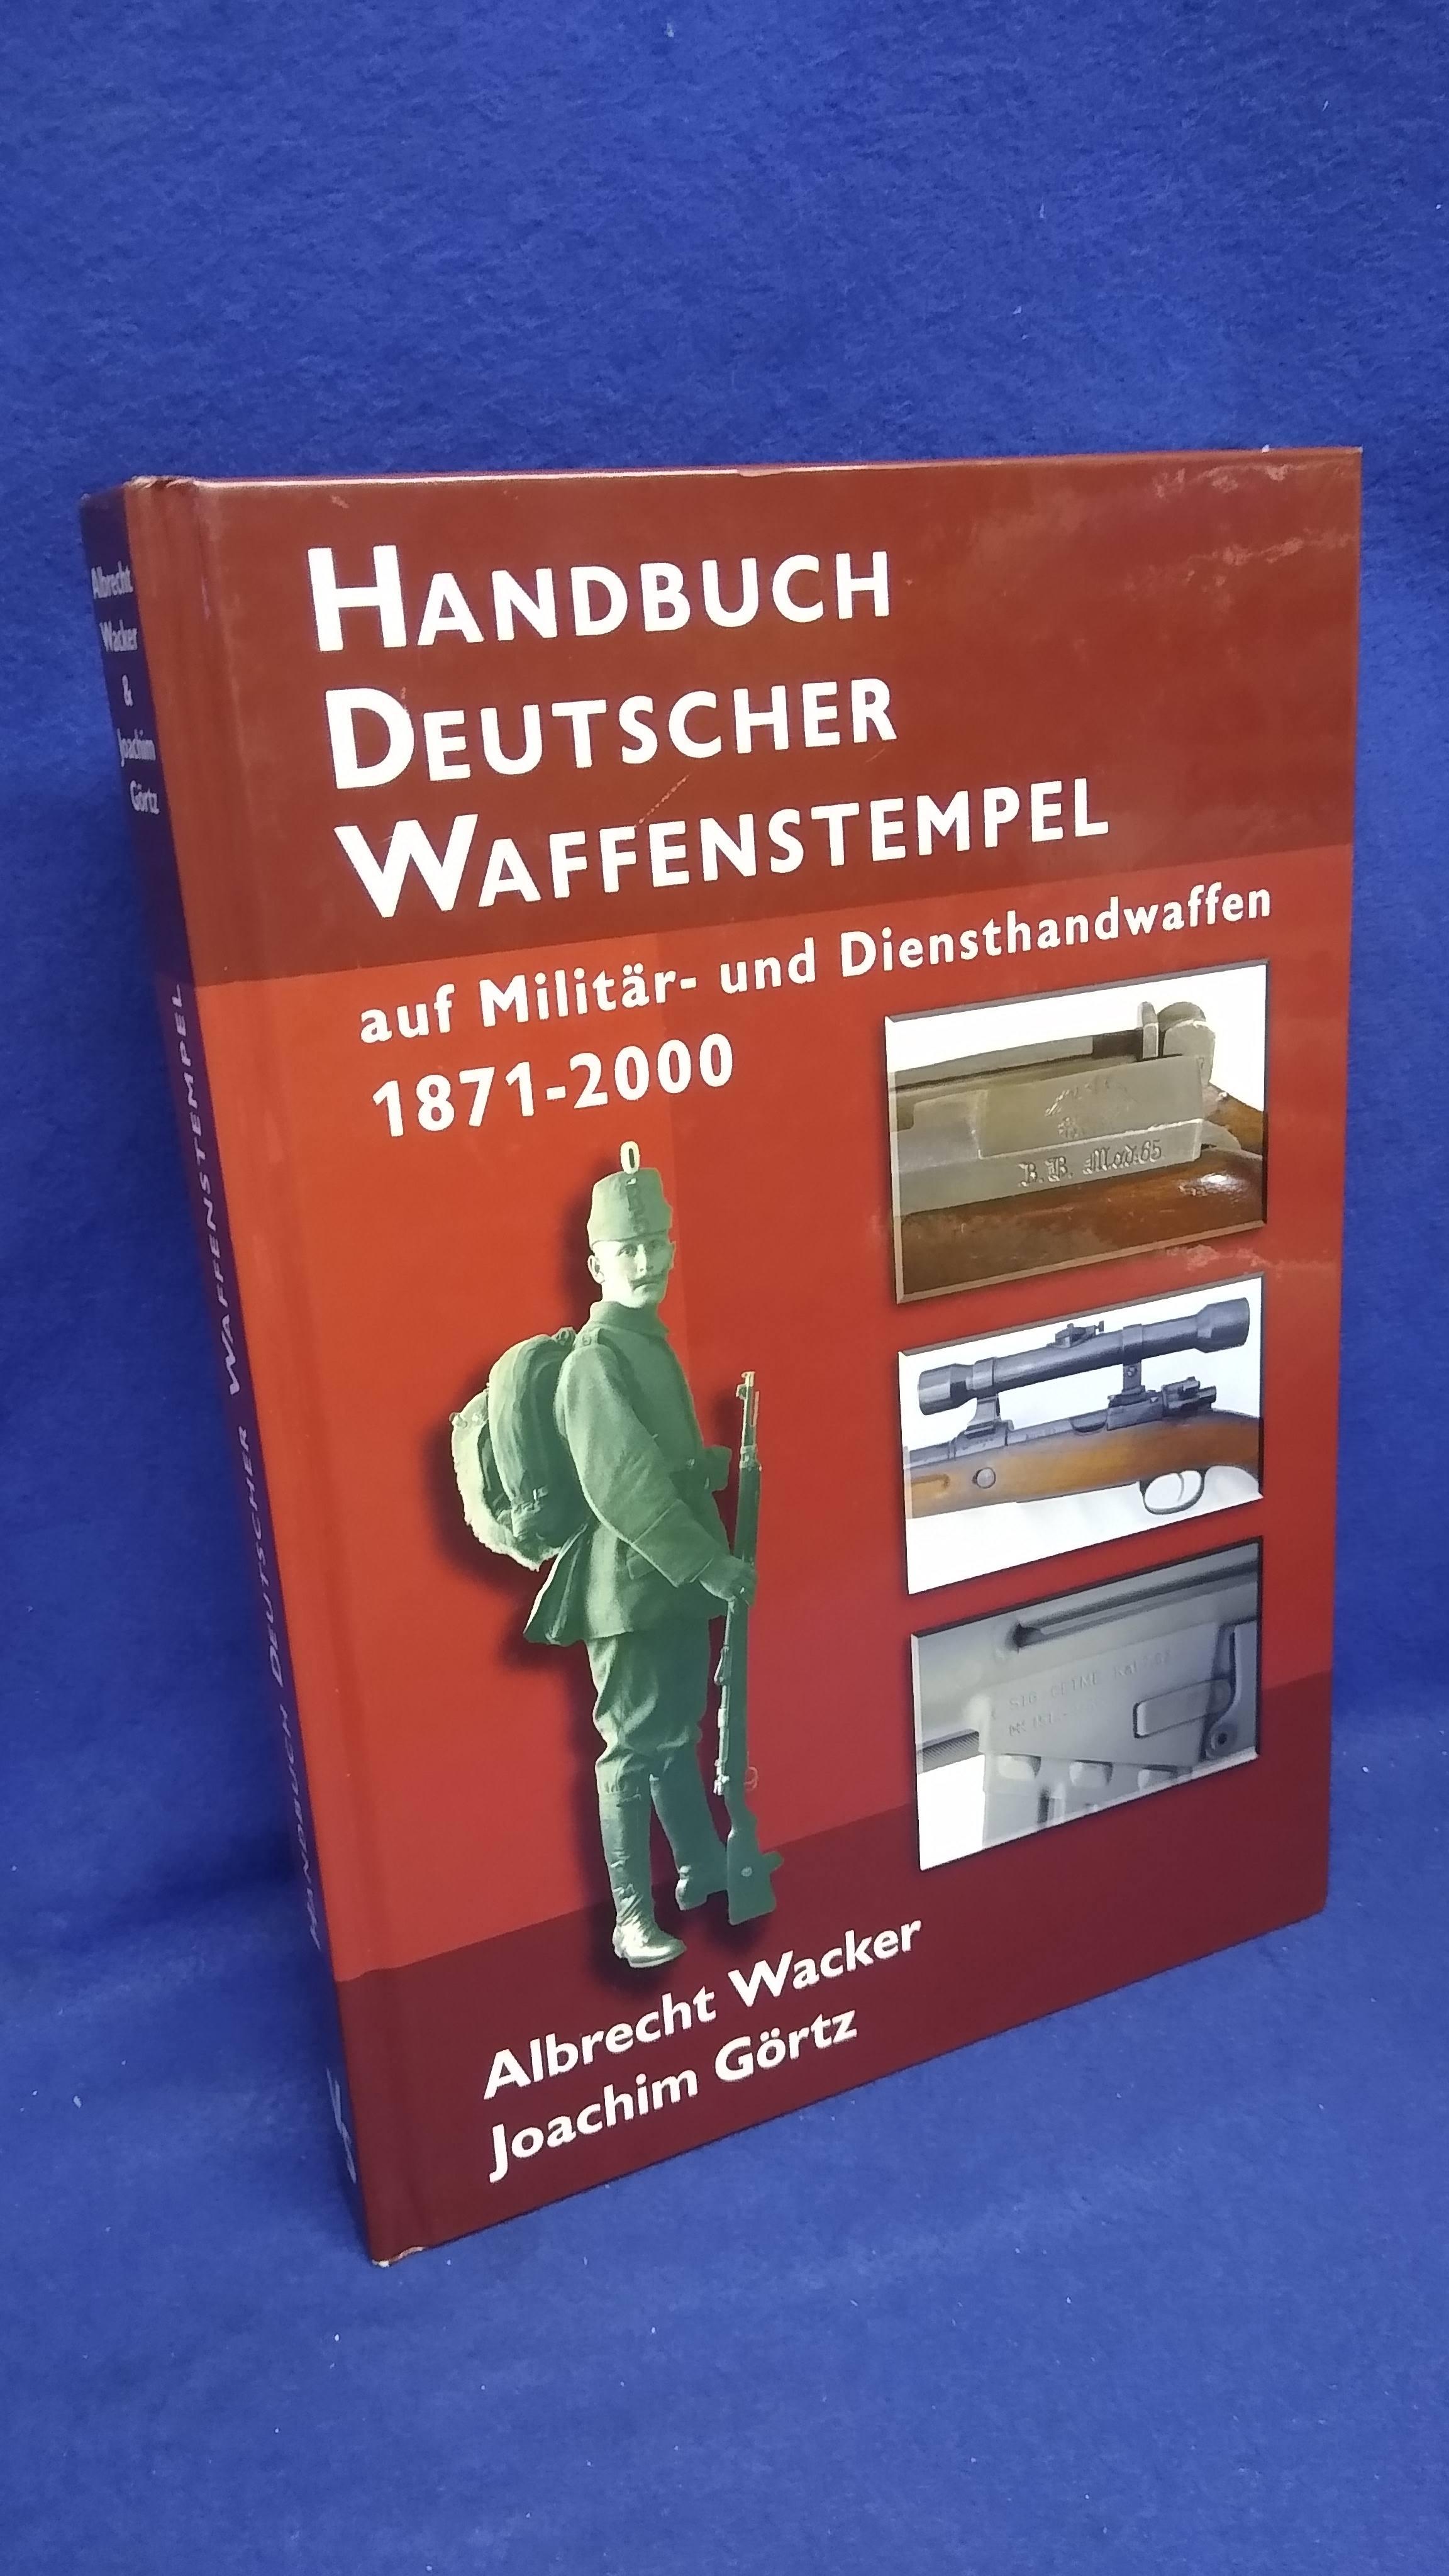 Handbuch Deutscher Waffenstempel: auf Militär- und Diensthandwaffen 1871-2000.